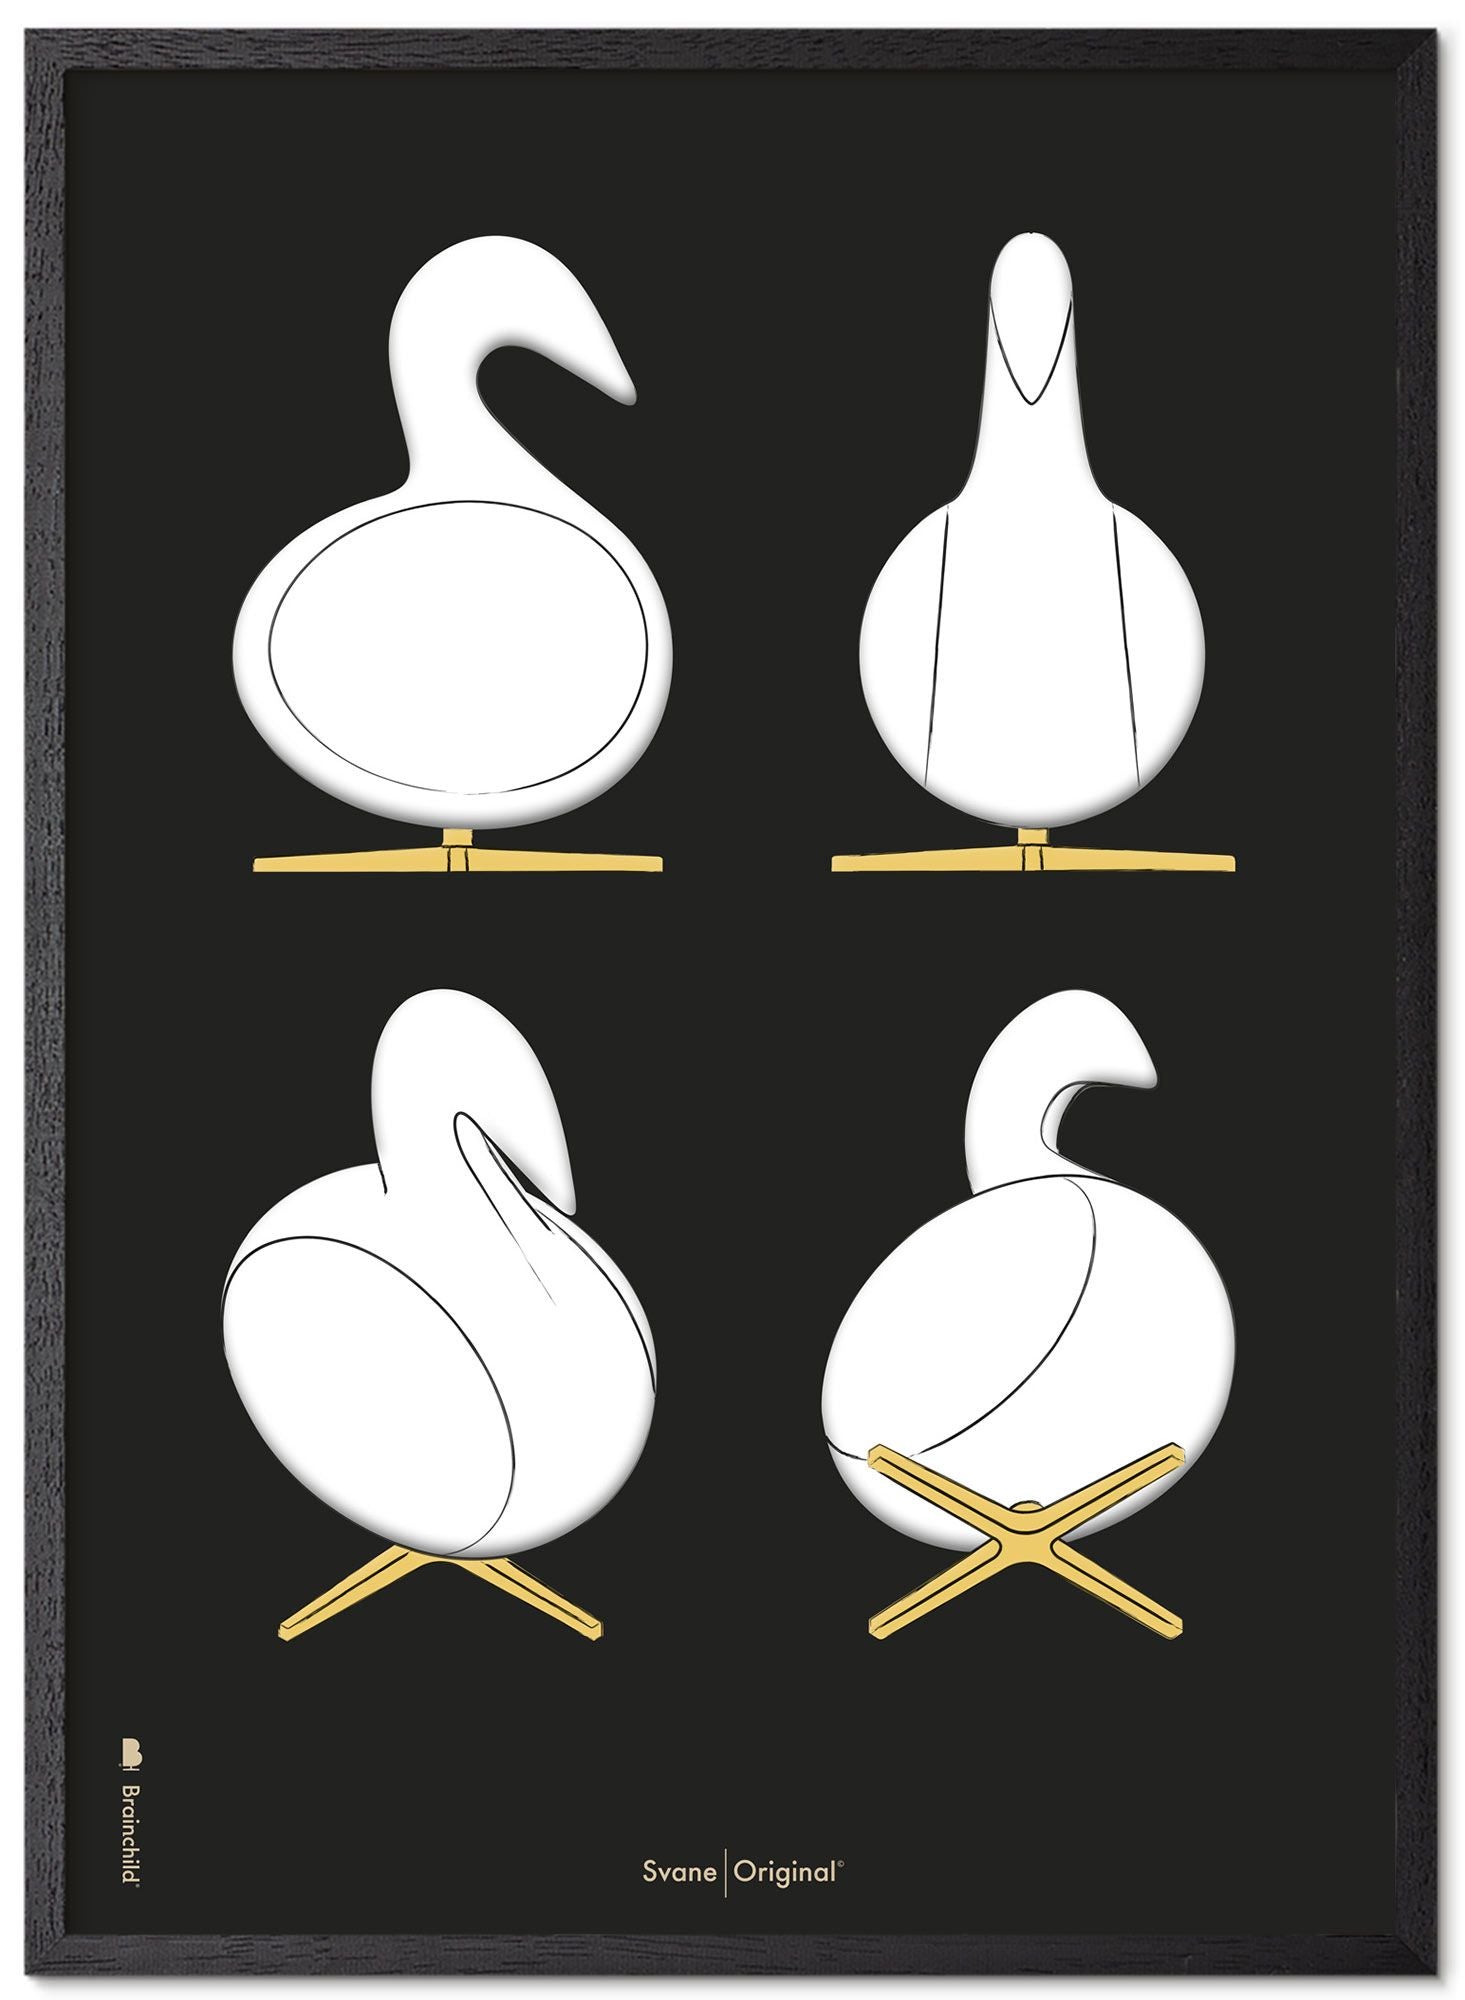 Brainchild Swan Design Skizzen Poster Rahmen Made Of Black Lacquered Wood 50x70 Cm, Schwarzer Hintergrund